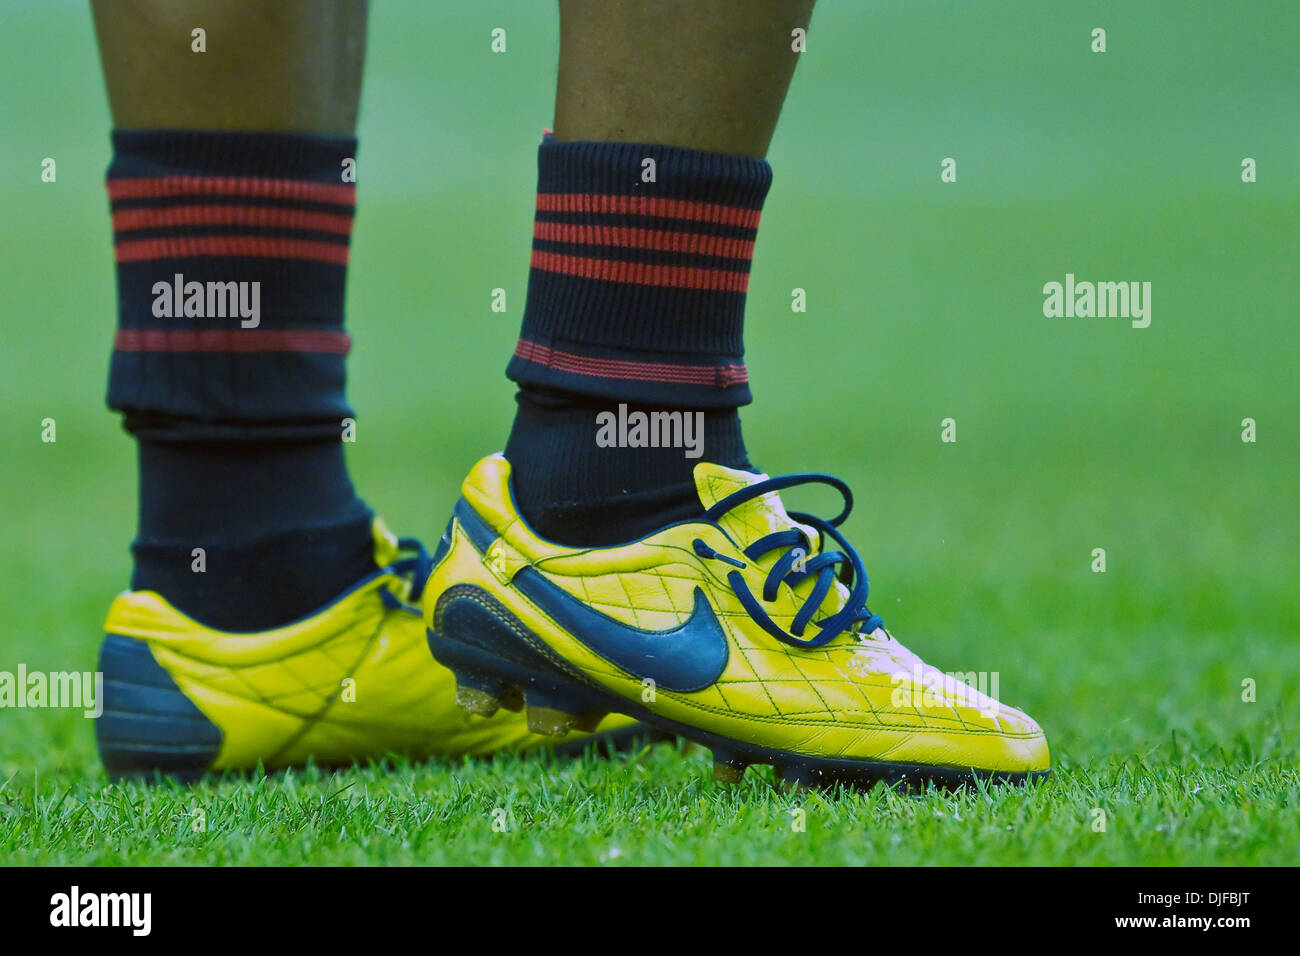 Avance del AC Milan Ronaldo (Ronaldinho) de Moreira's(#80) Los zapatos durante la reproducción de la FIFA amistoso juego de exhibición entre el AC Milan y la repercusión de Montreal jugado en